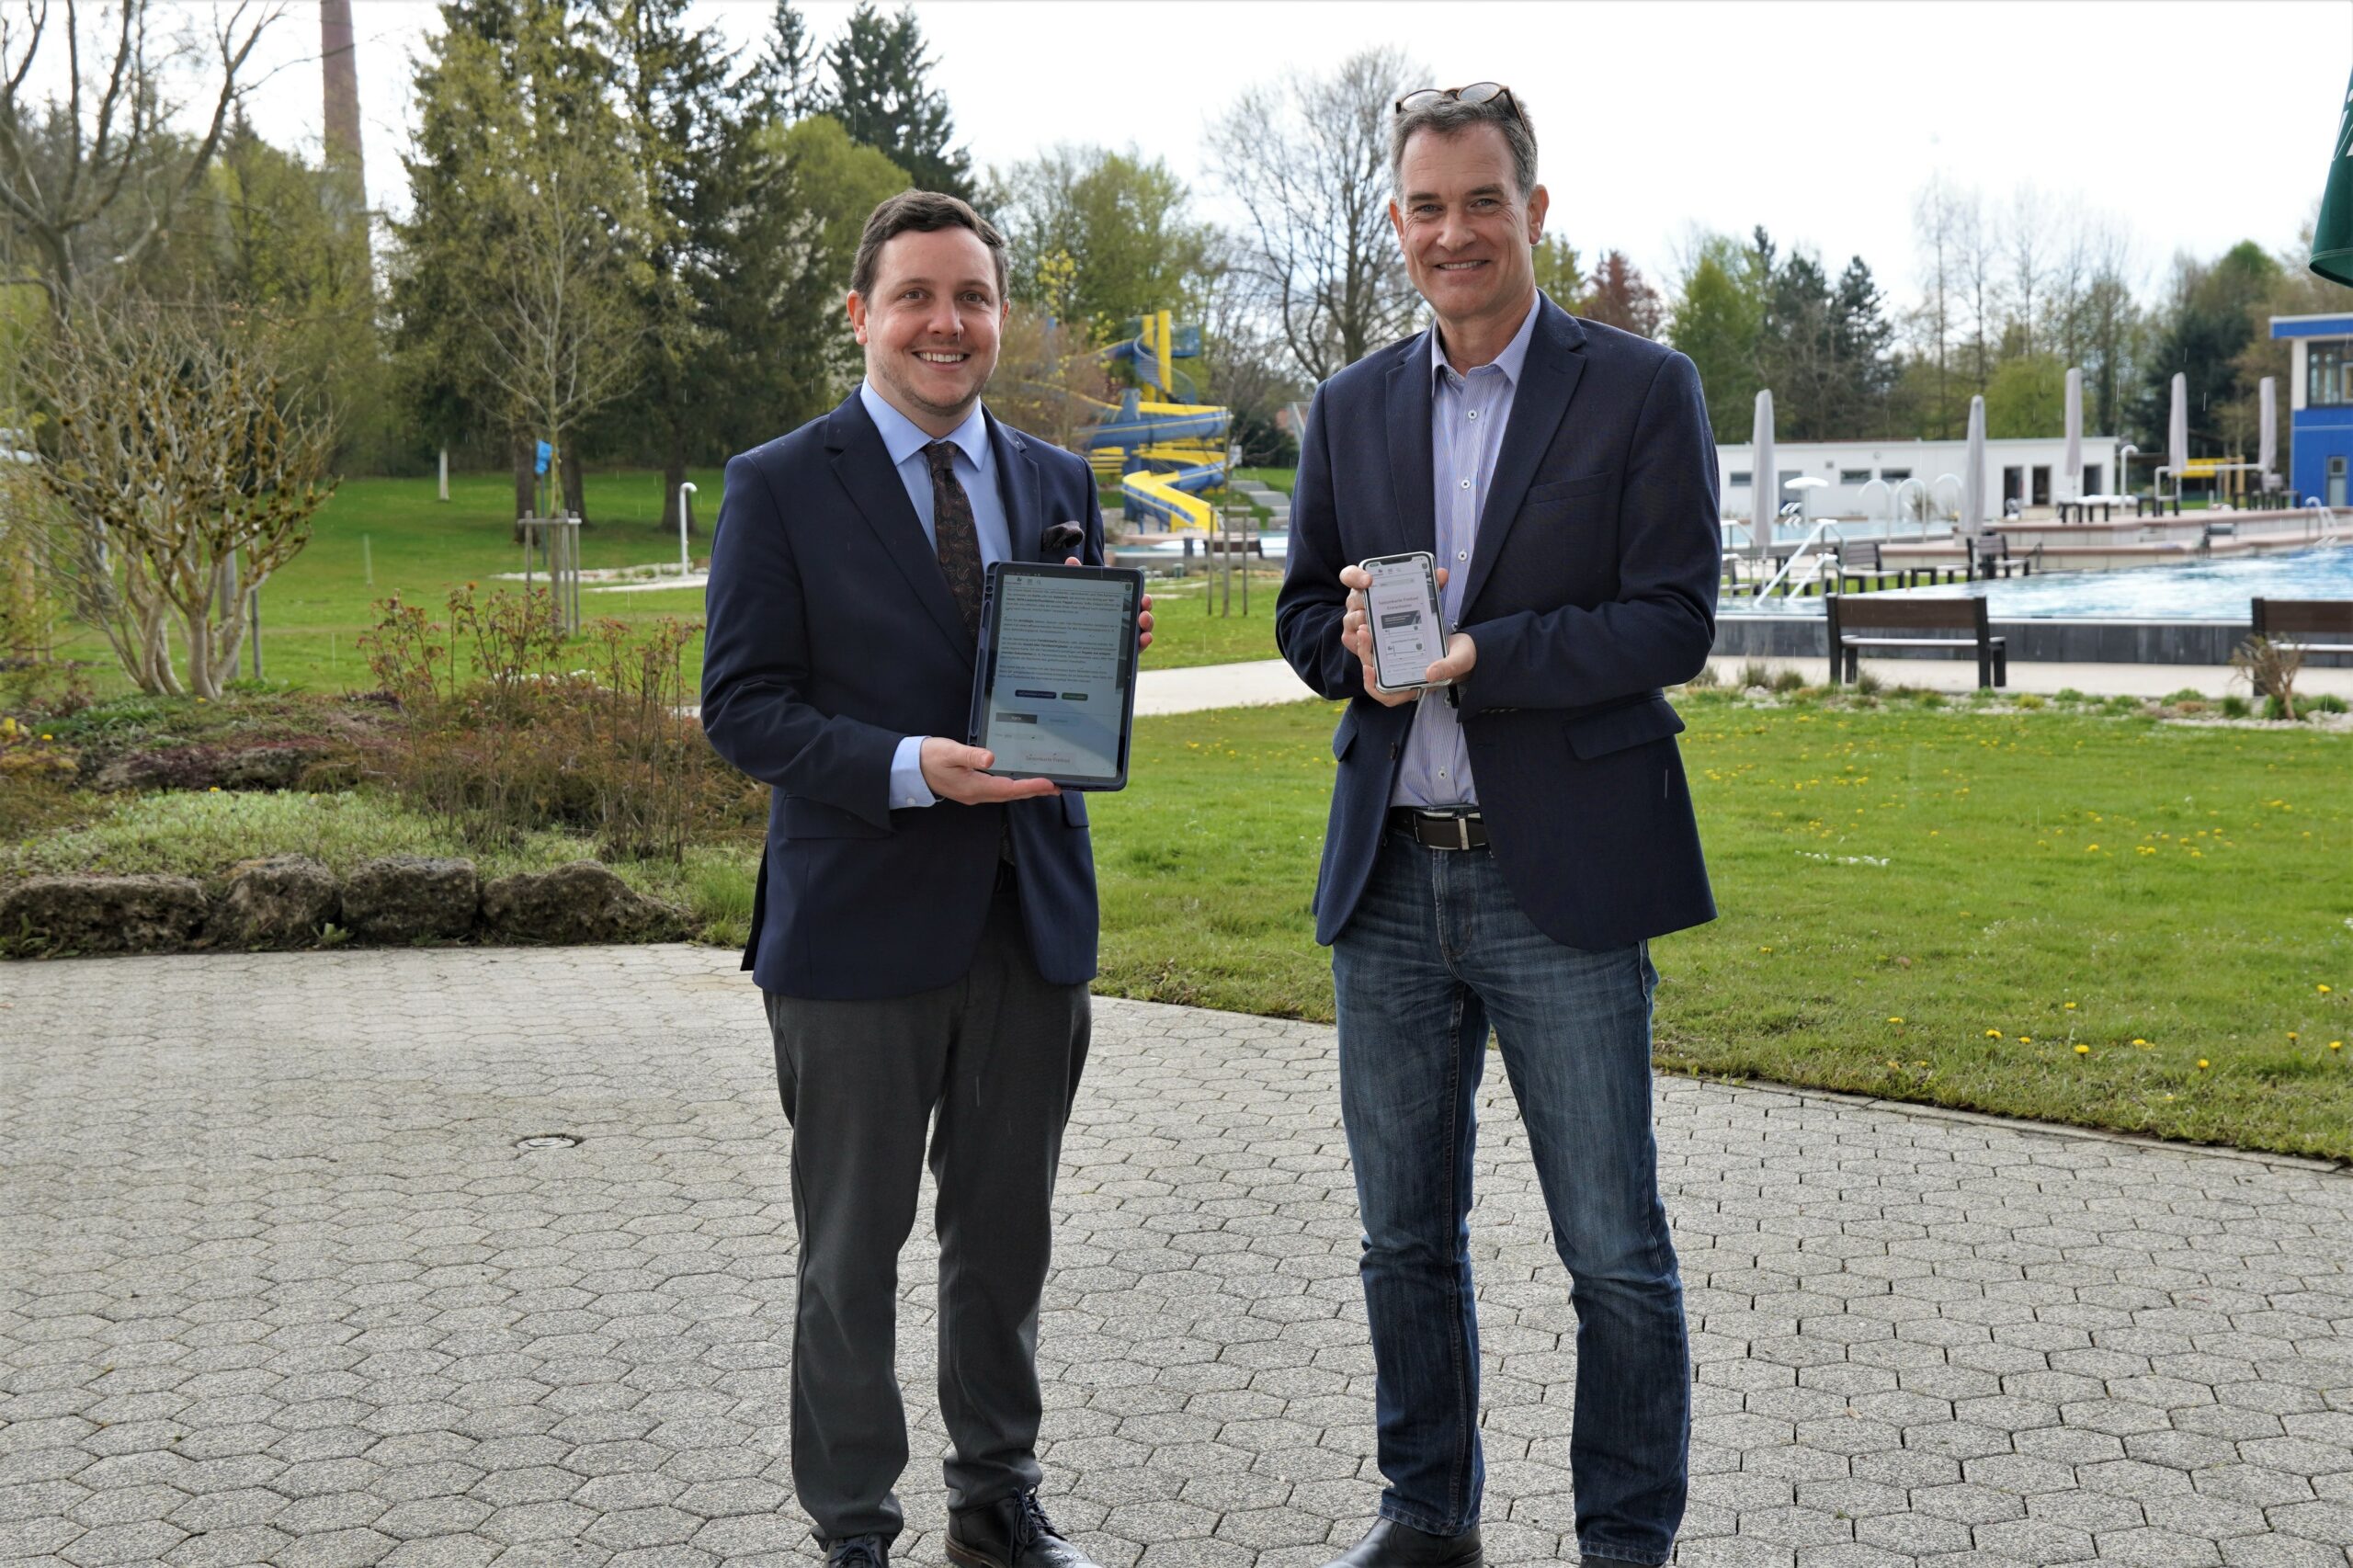 Start des Onlinekartenverkaufs mit Bürgermeister Hans-Peter Dangschat und Stadtwerkeleiter Frank Wachsmuth